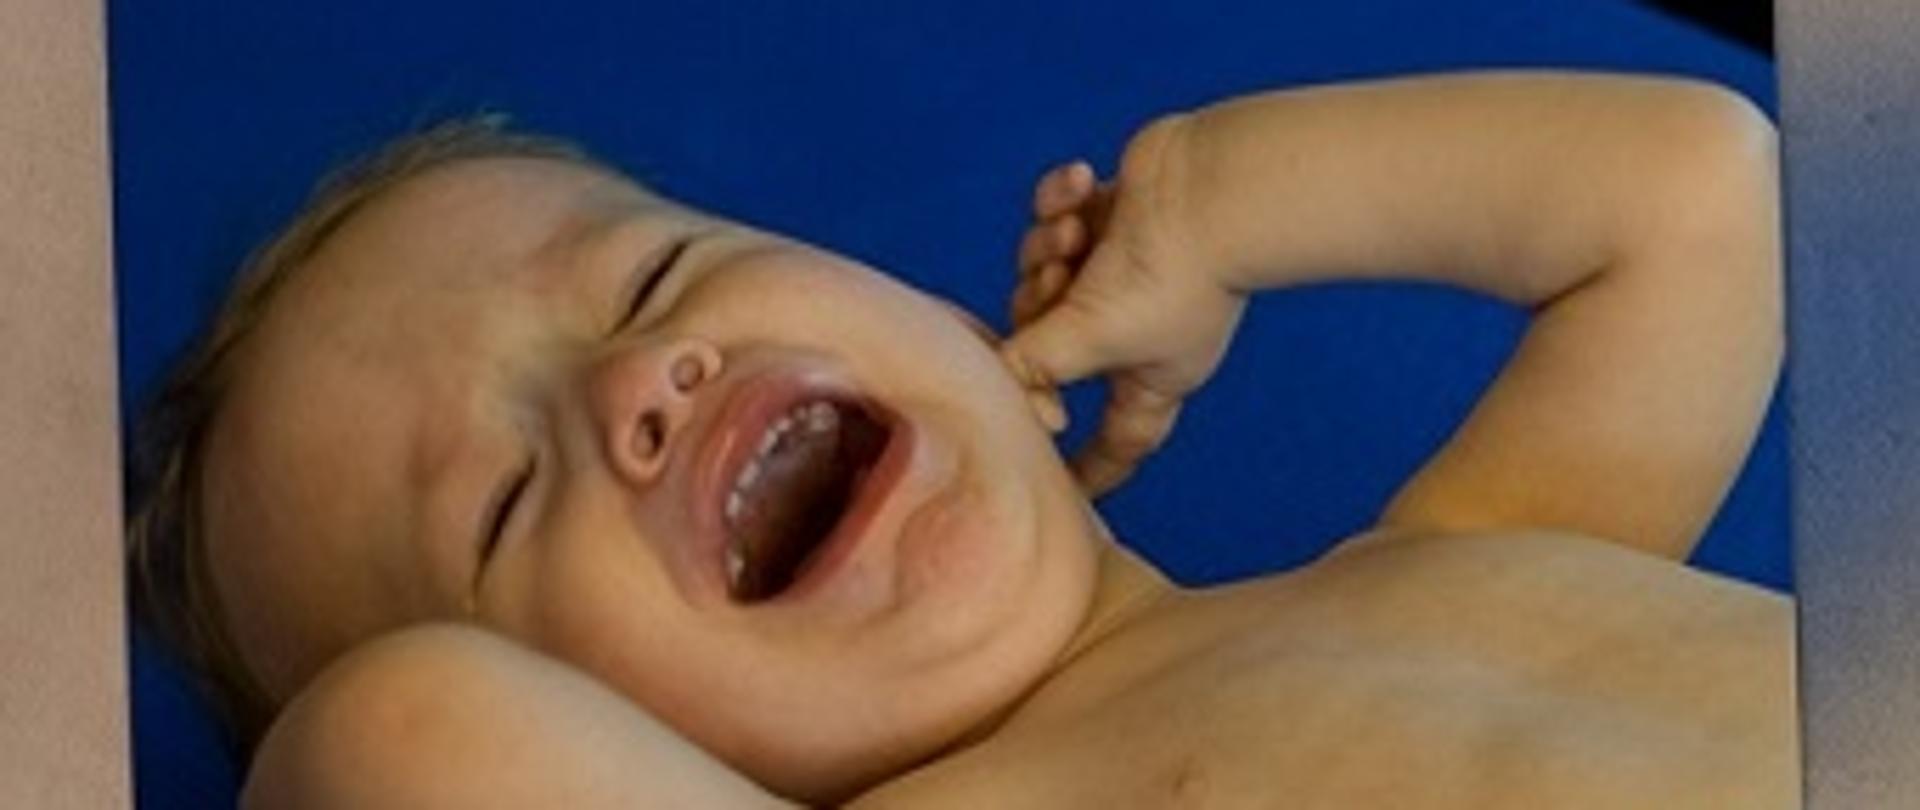 Zdjęcia przedstawia plączące małe dziecko.